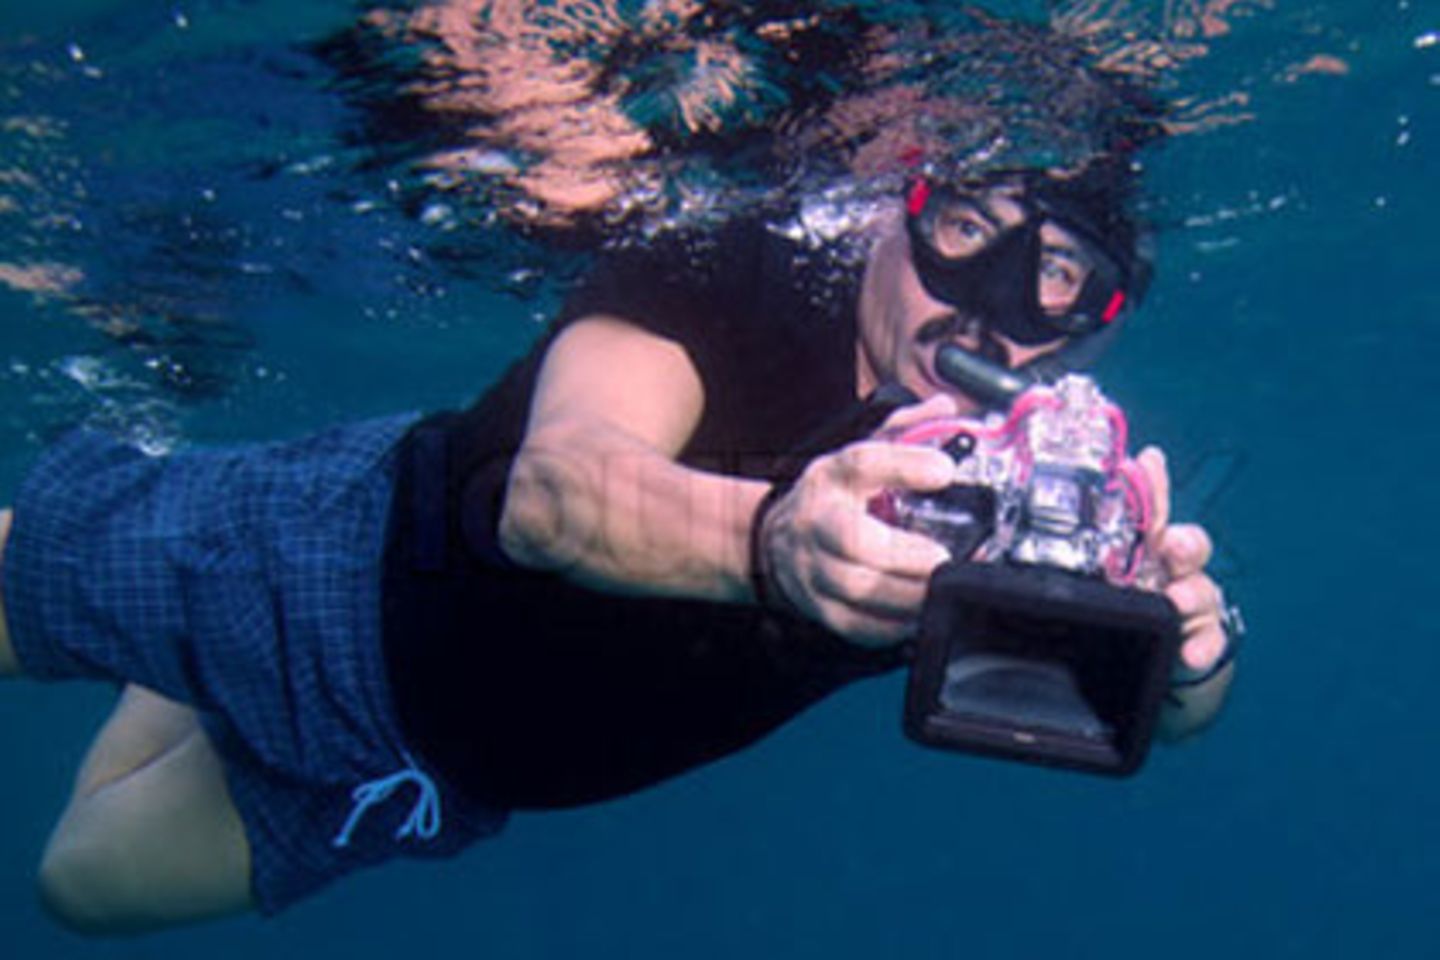 Zwölf Unterwasserkameras hat Stiftung Warentest getestet. Doch nur die wenigsten machten gute Fotos. Echte profis verlassen sich deshalb lieber auf spezielle Gehäuse für ihr Profigerät.